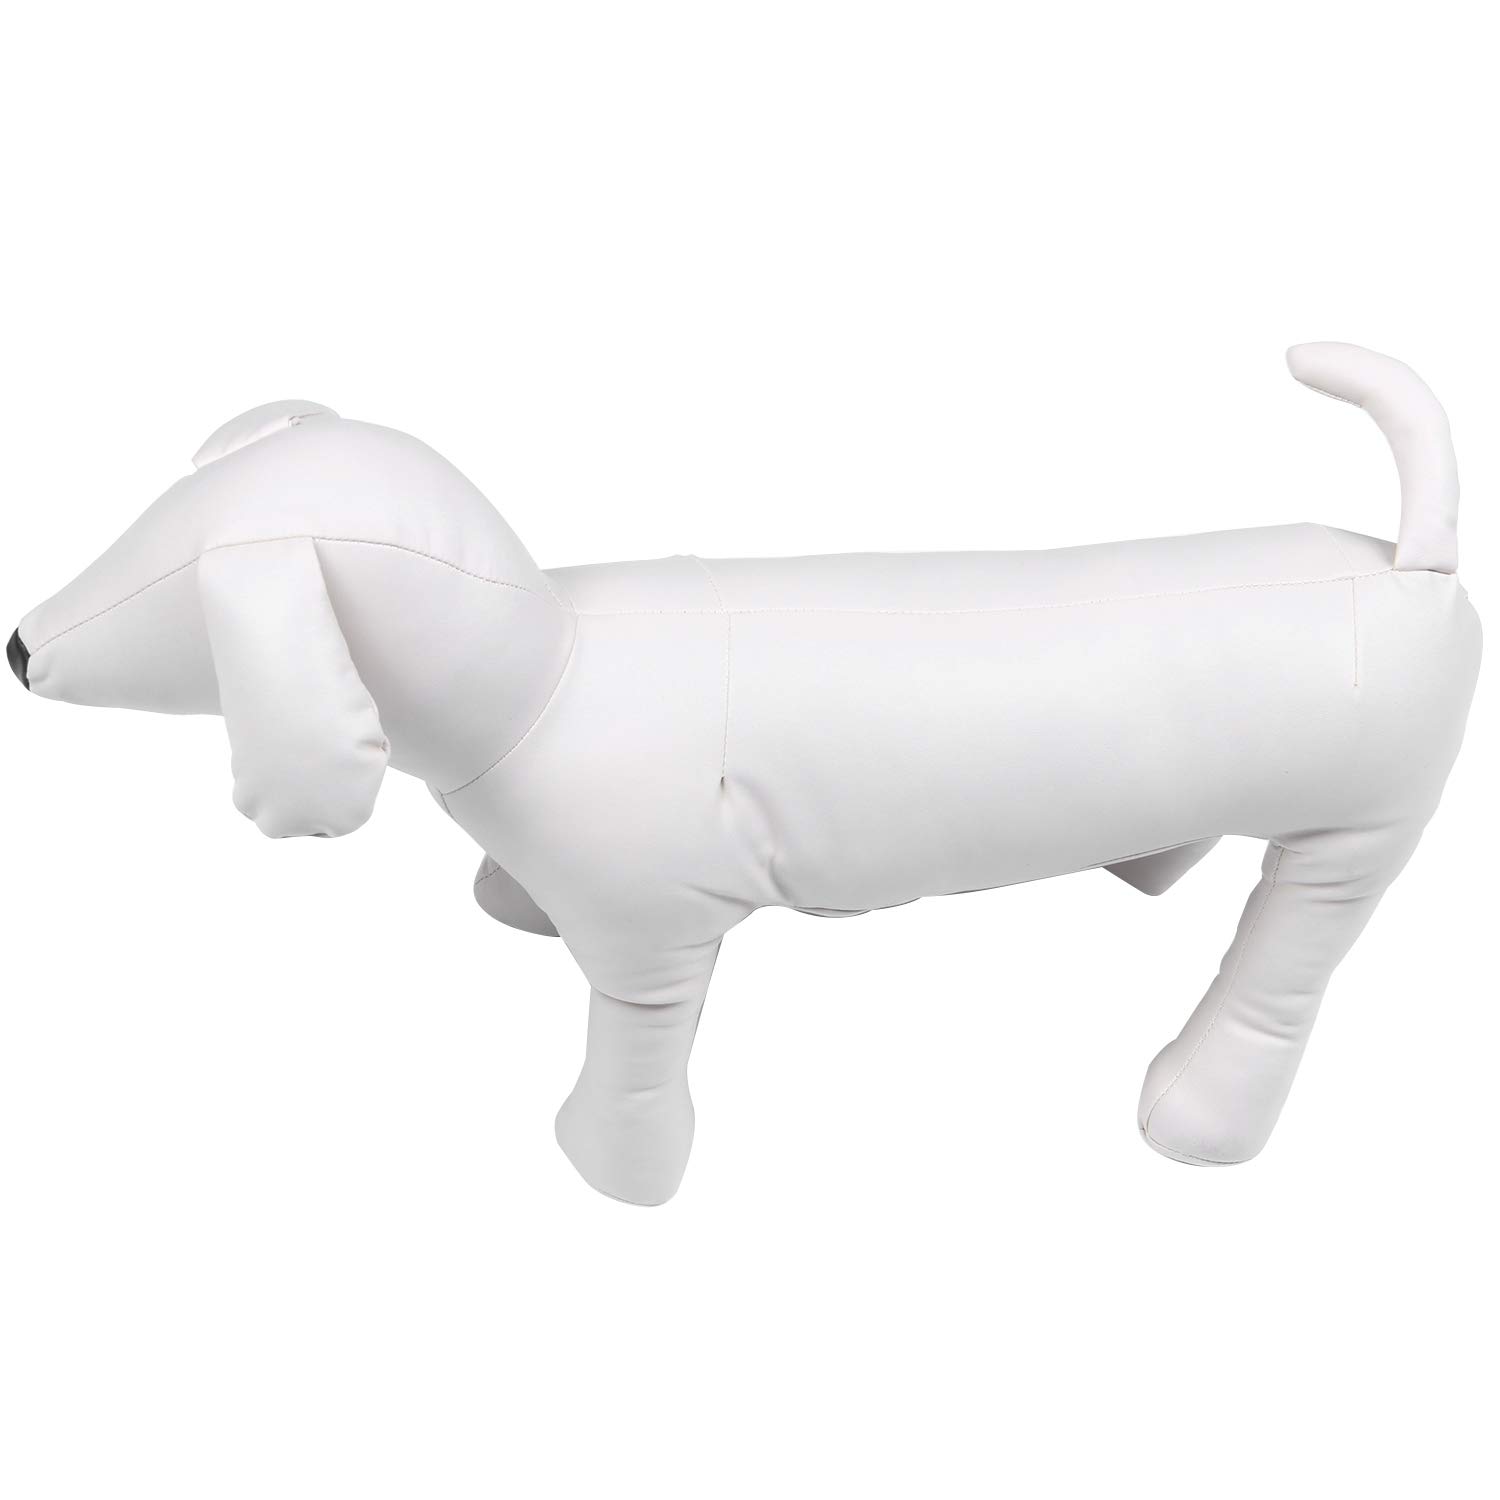 Melitt Leder Hund Schaufensterpuppen Stehend Stellung Hund Modelle Spielzeug Haustier Tier Geschaeft Schaufensterpuppe L